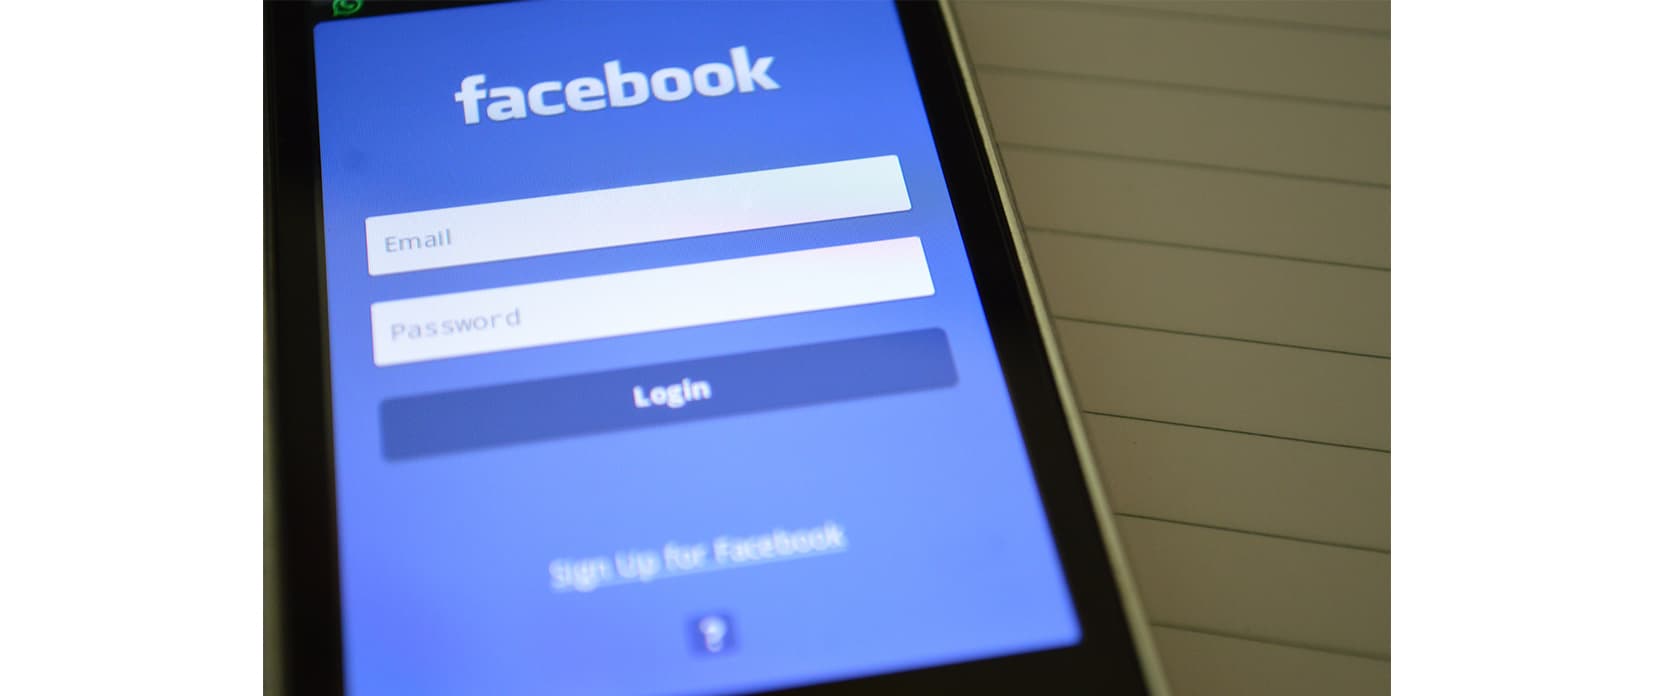 Facebook had toegang tot sms- en bel-data op Android